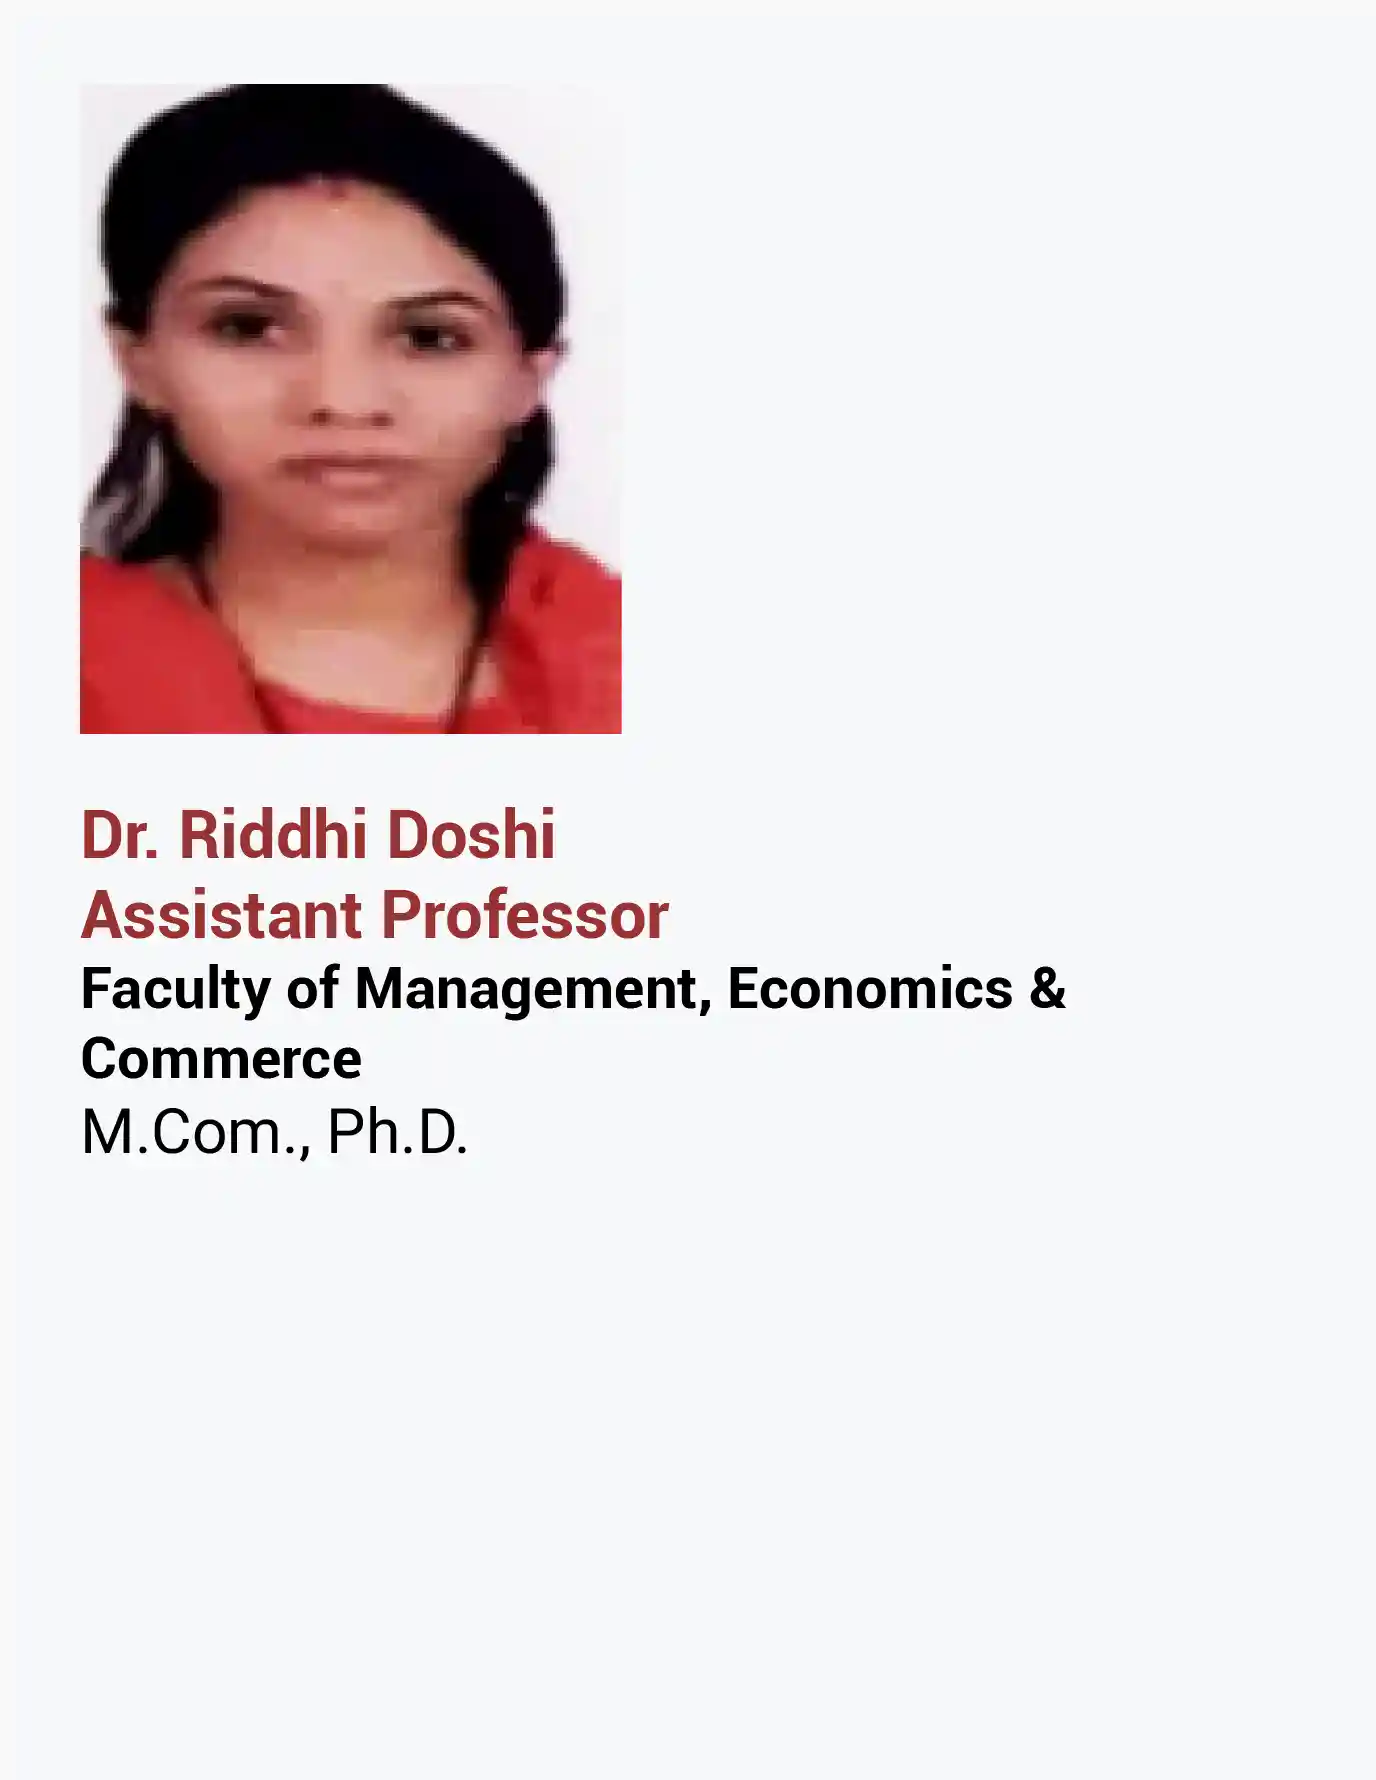 Riddhi doshi